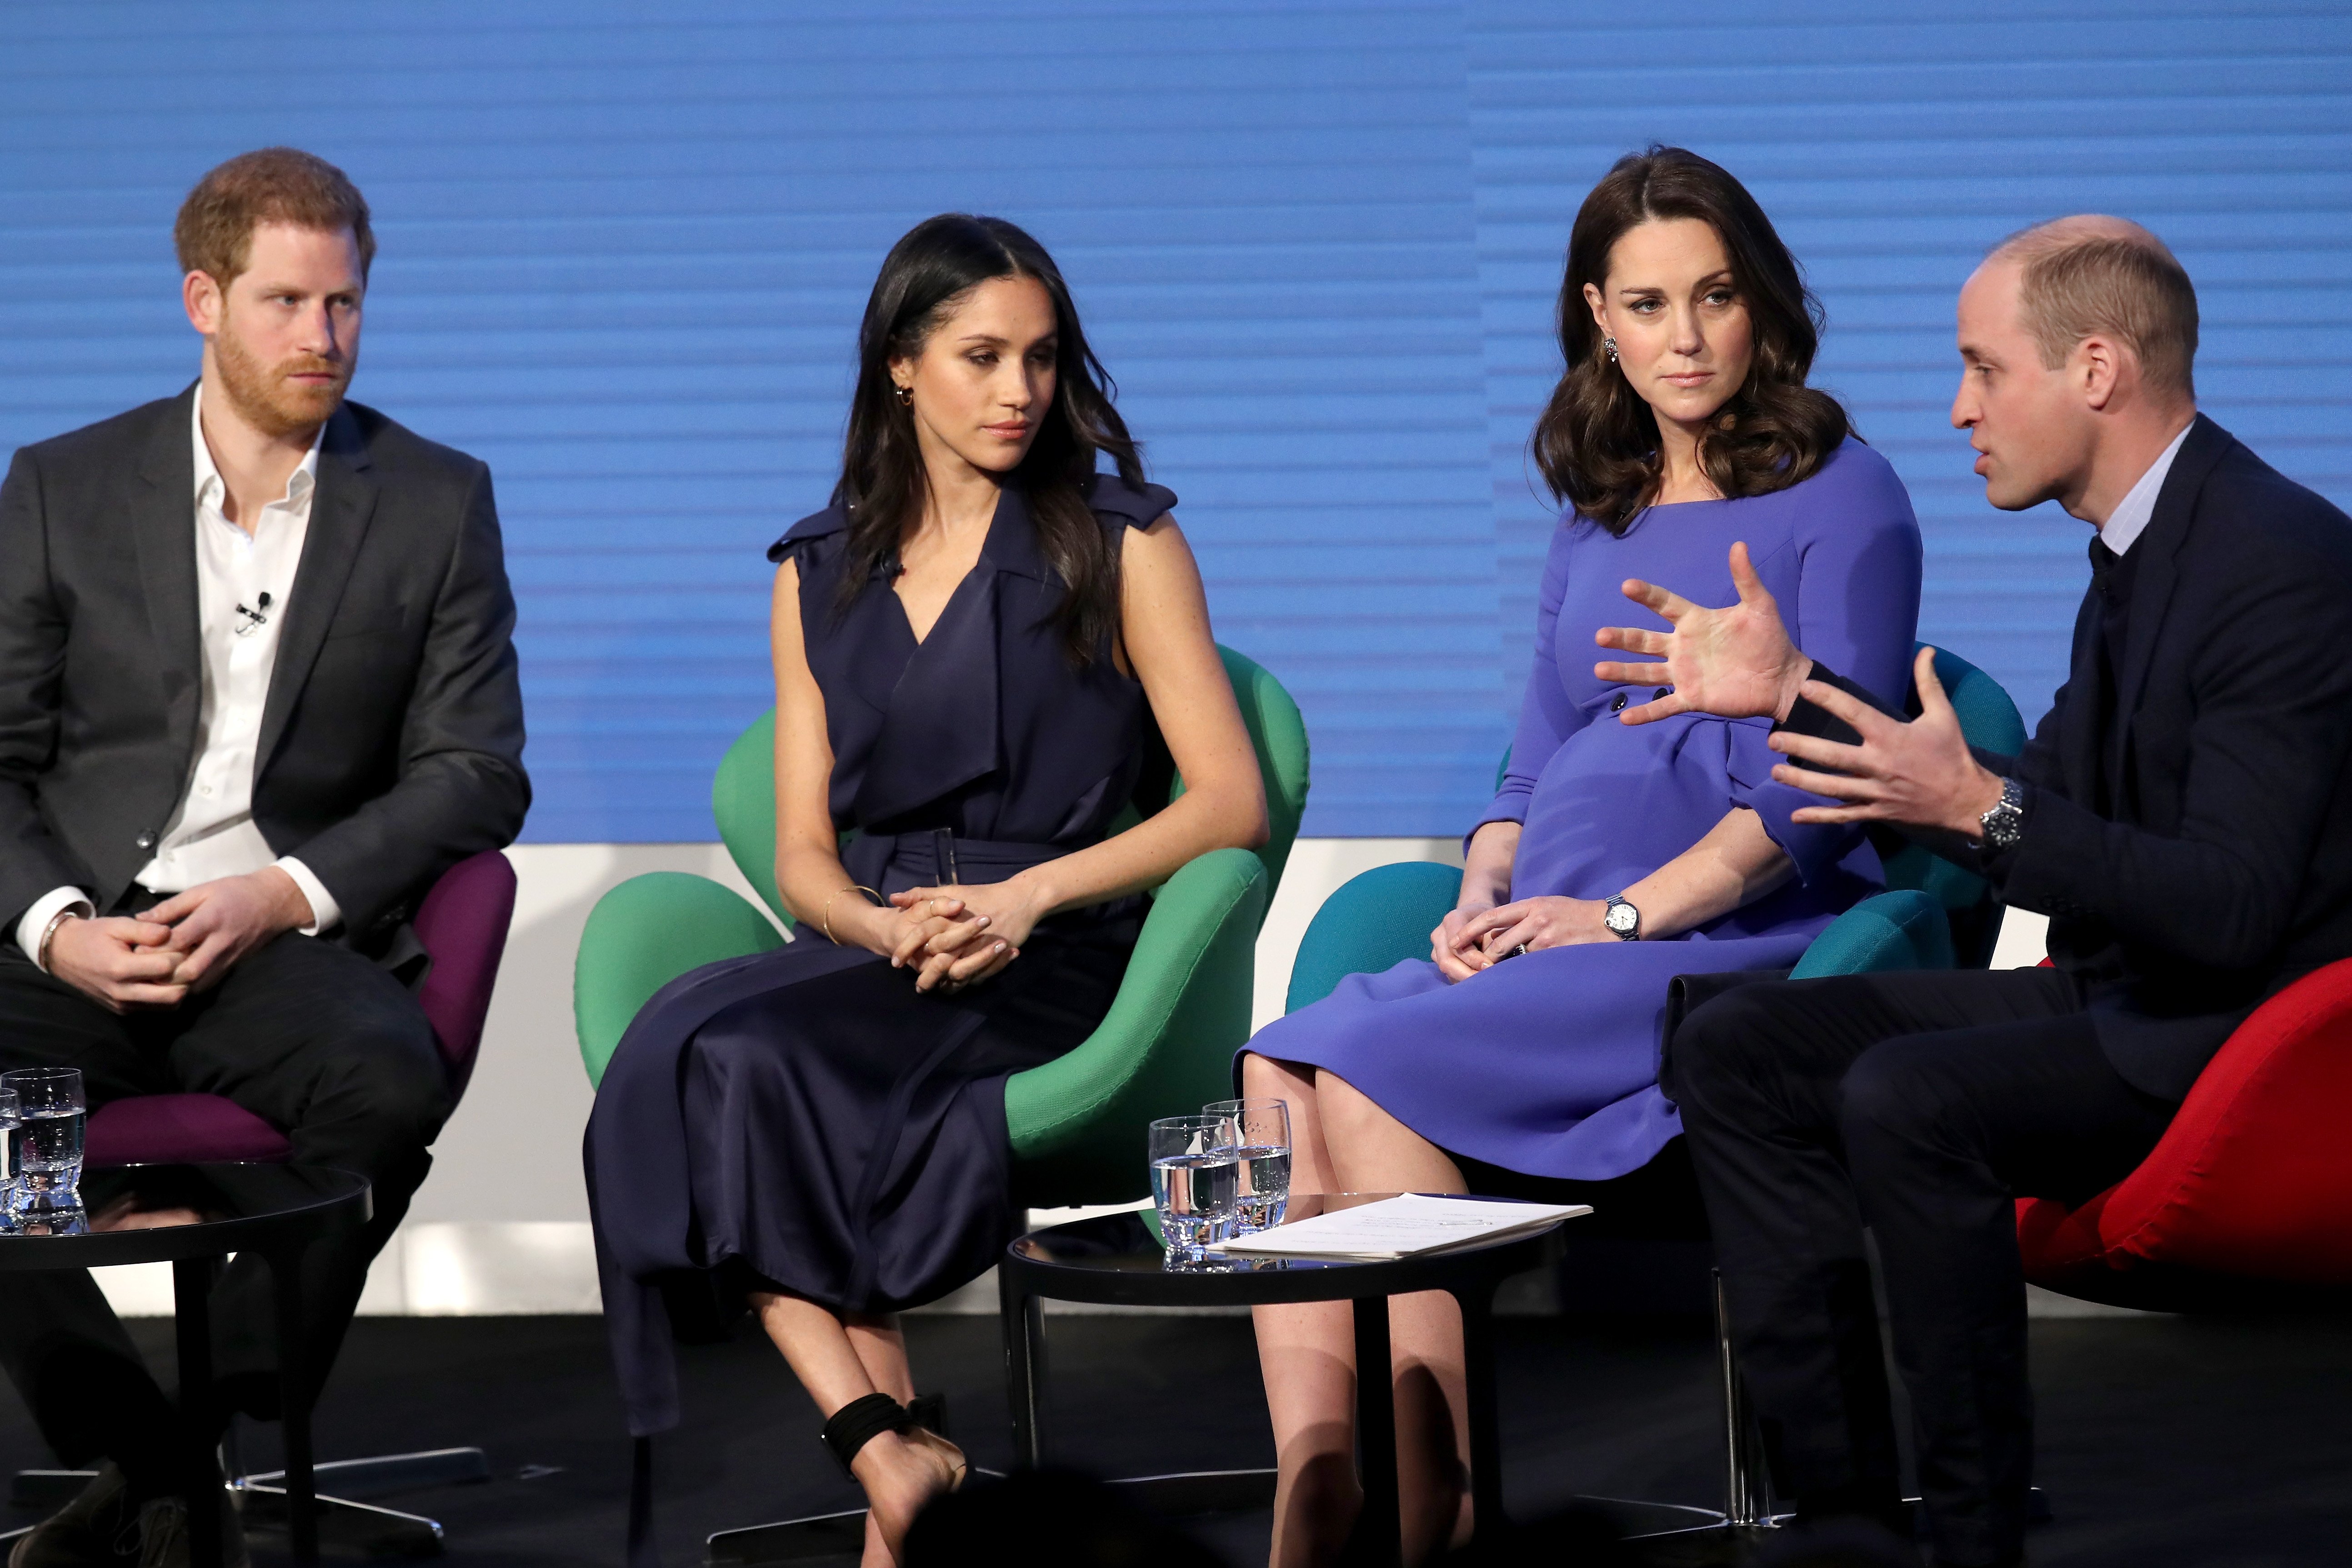 Le prince Harry, Meghan Markle, Catherine, duchesse de Cambridge et le prince William, duc de Cambridge, assistent au premier forum annuel de la Royal Foundation, le 28 février 2018 à Londres | Source : Getty Images